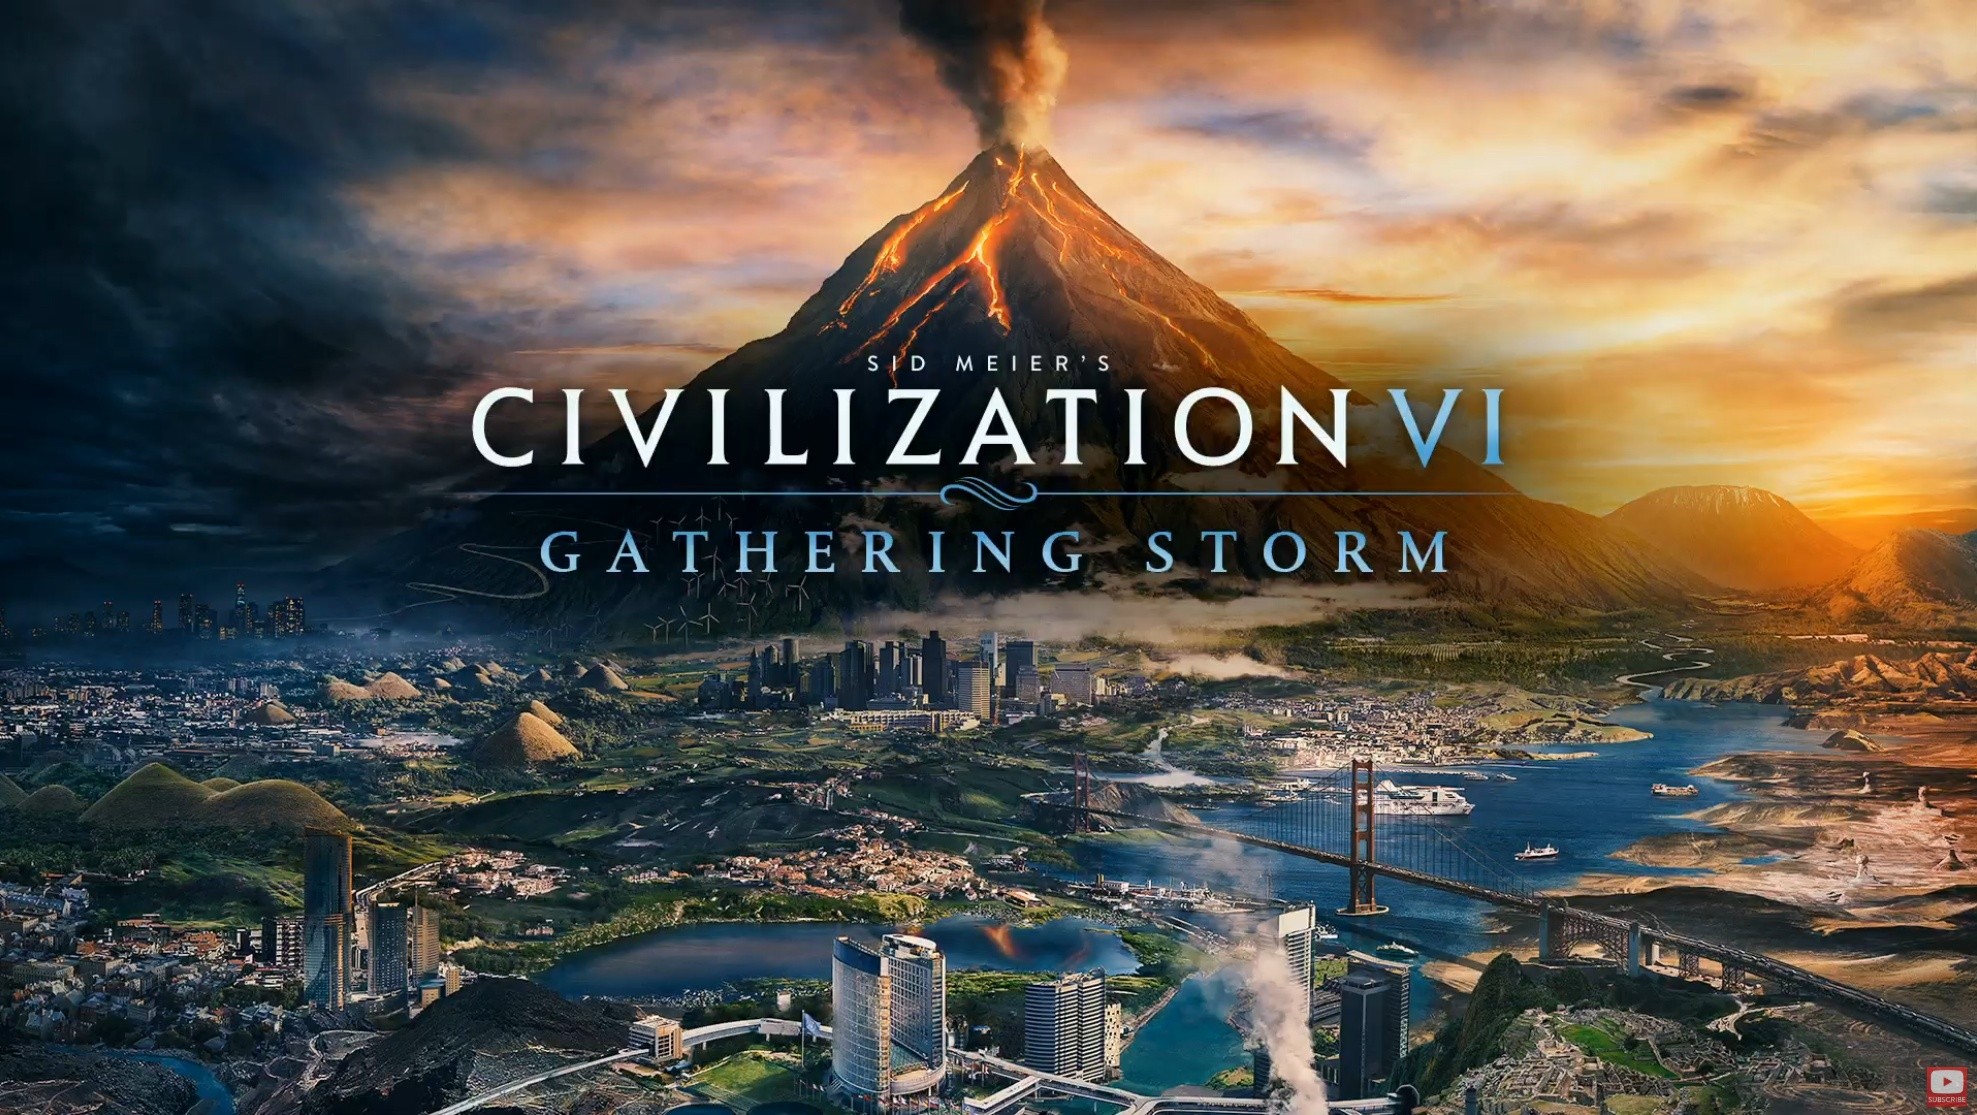 civilization vi theme song